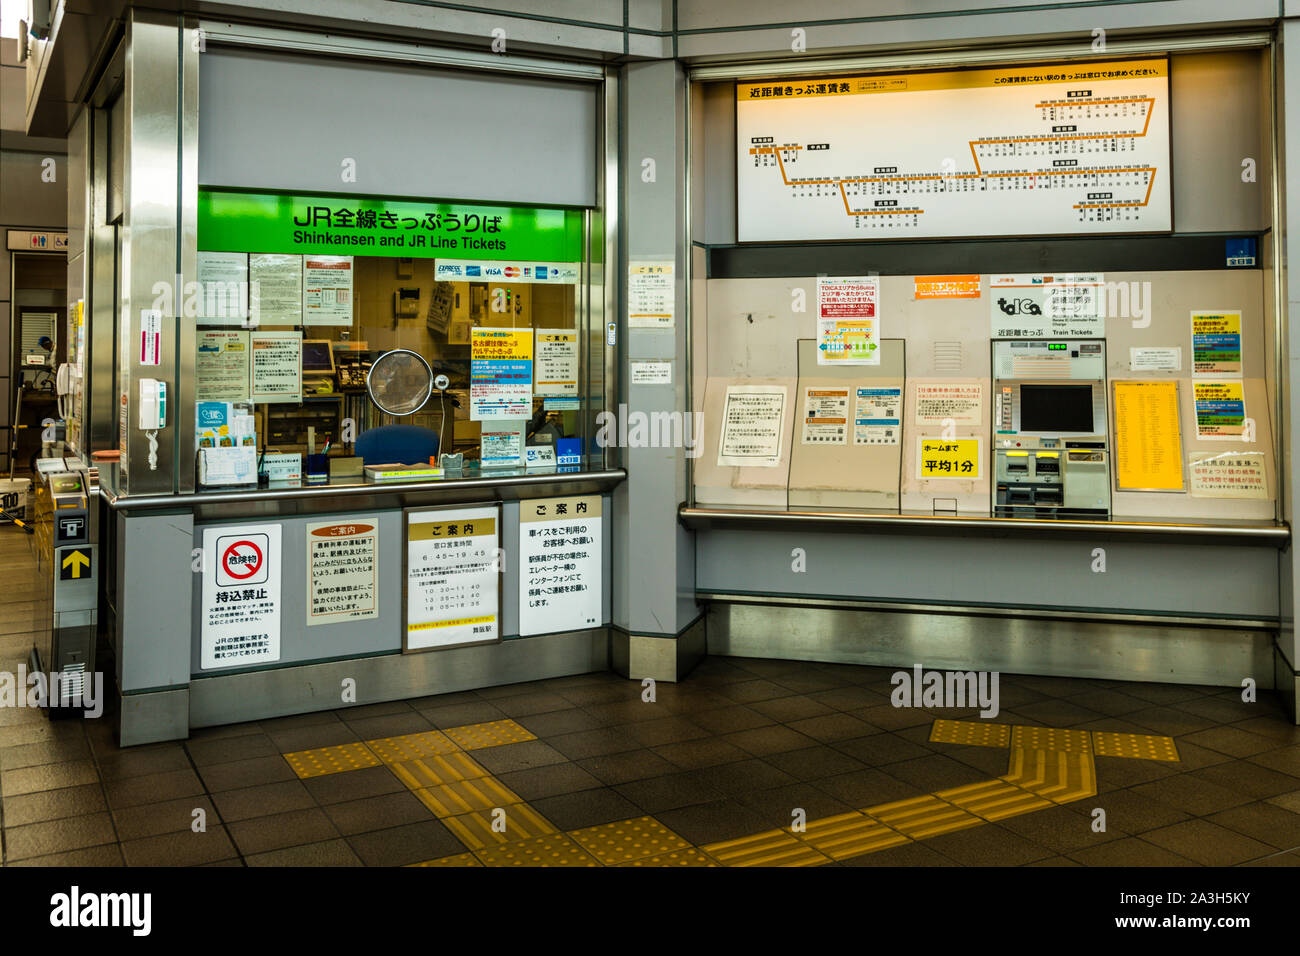 Shinkansen Speed Train Ticket Counter in Japan Stock Photo